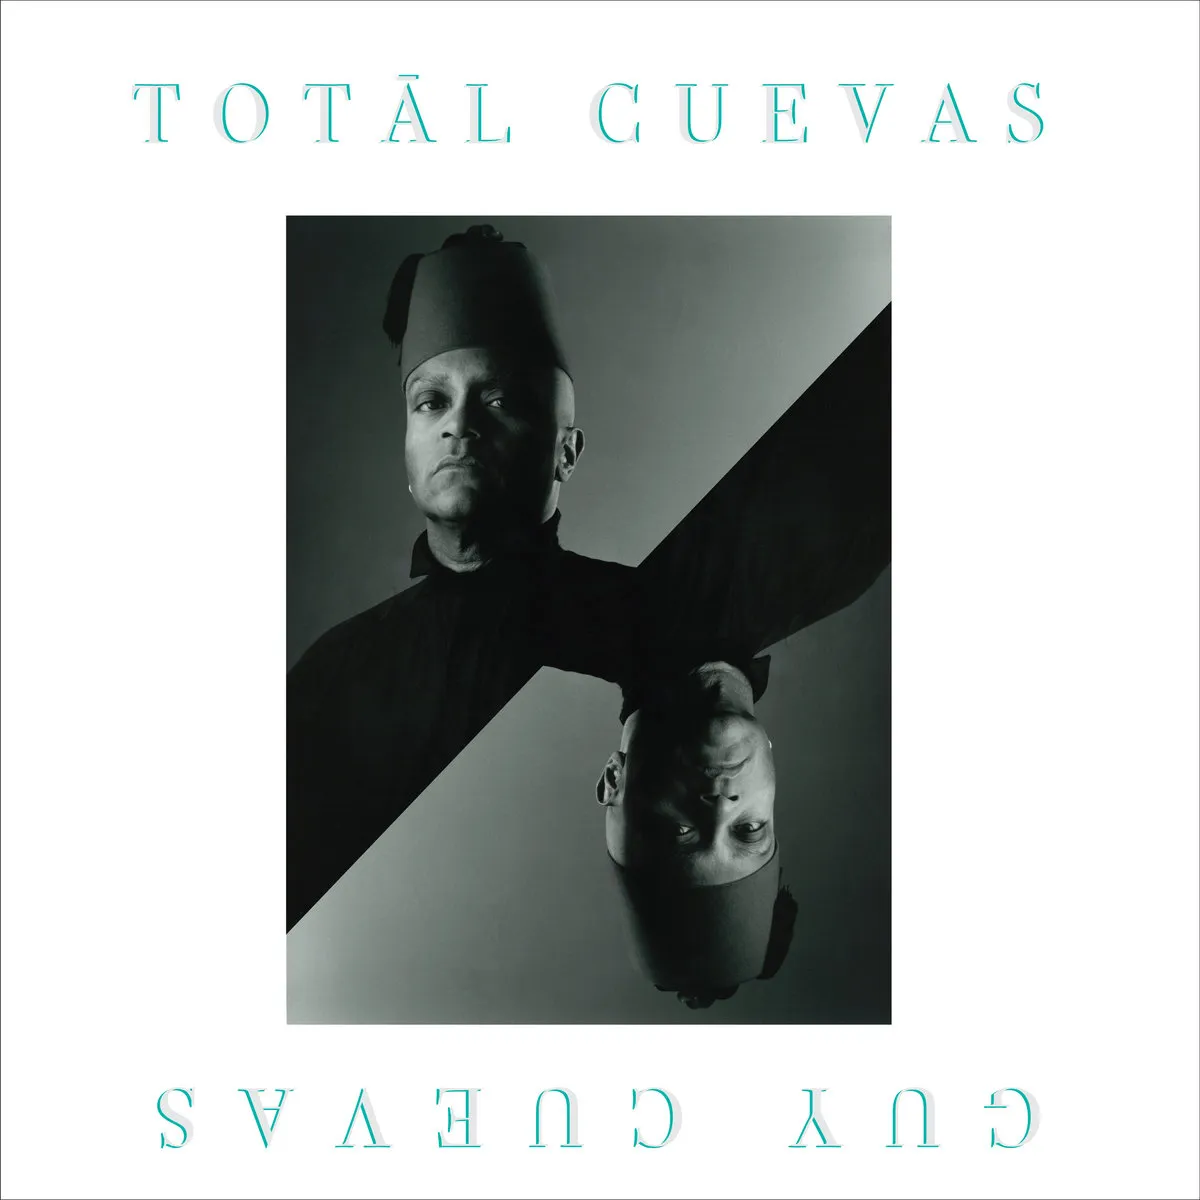 Guy Cuevas - Totāl Cuevas : 2x12inch